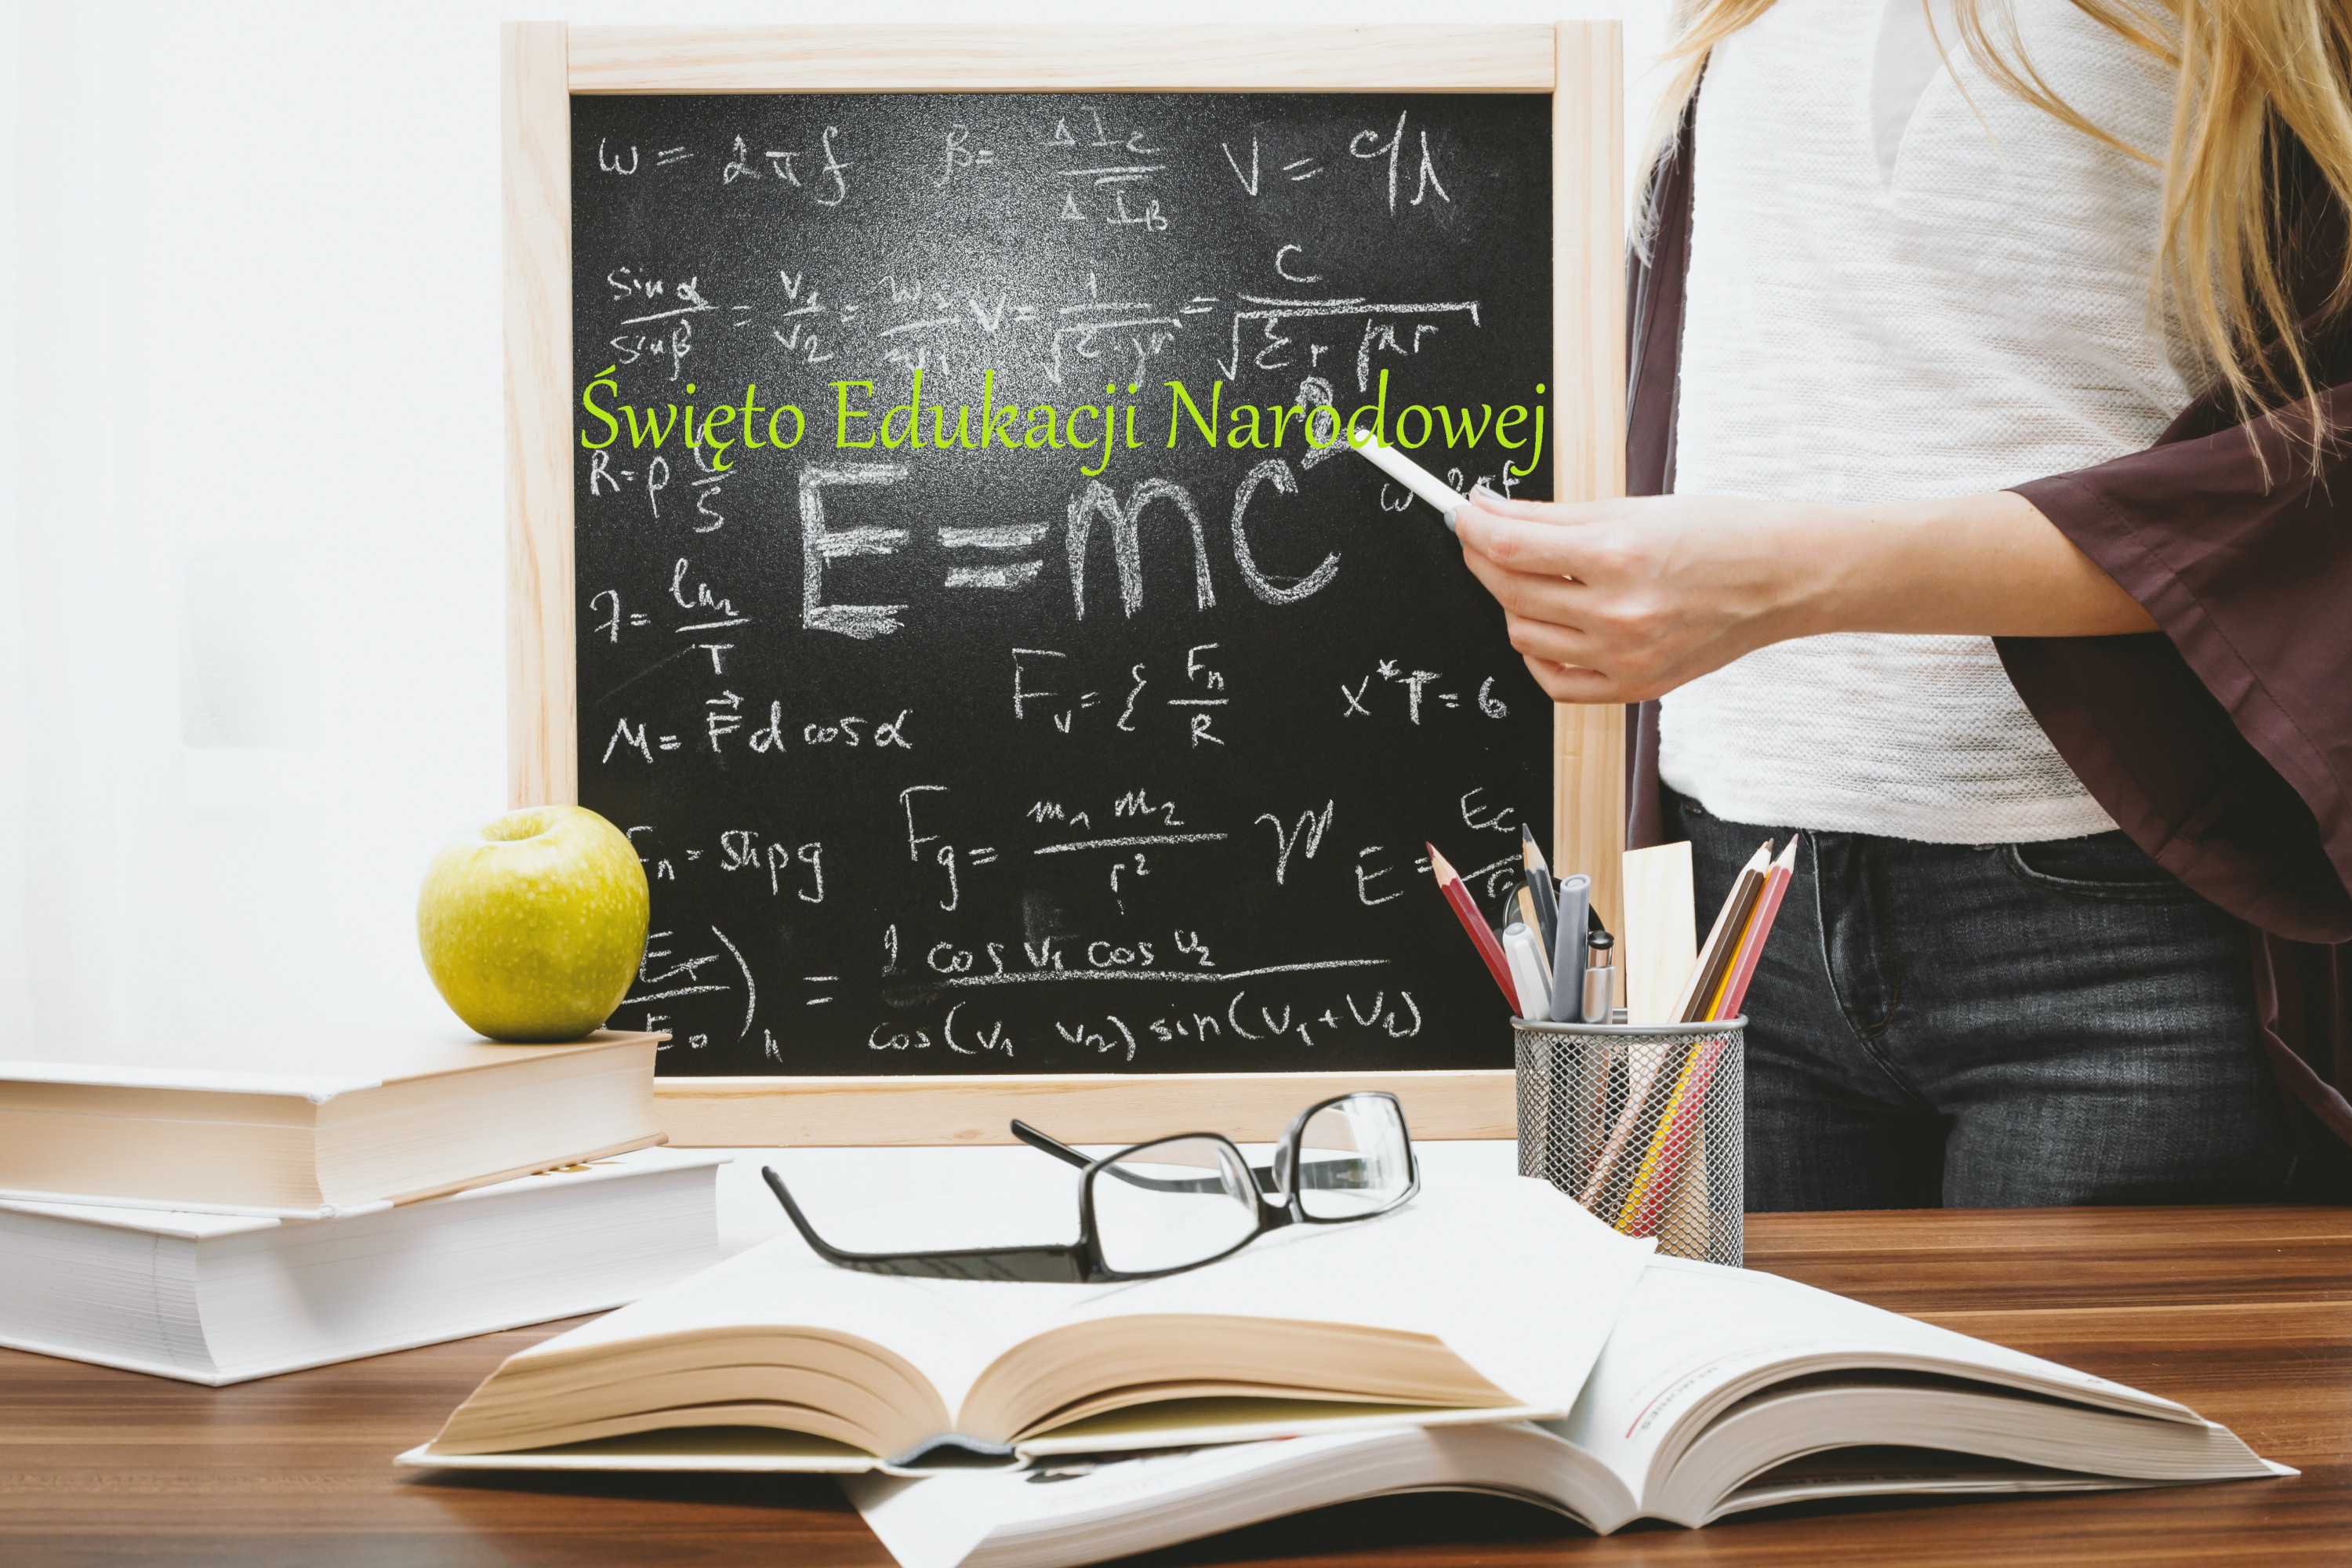 Tablica, na tablicy napis Święto Edukacji Narodowej, widać postać nauczycielki trzymającej kredę, na biurku książki przybory do pisania, jabłko